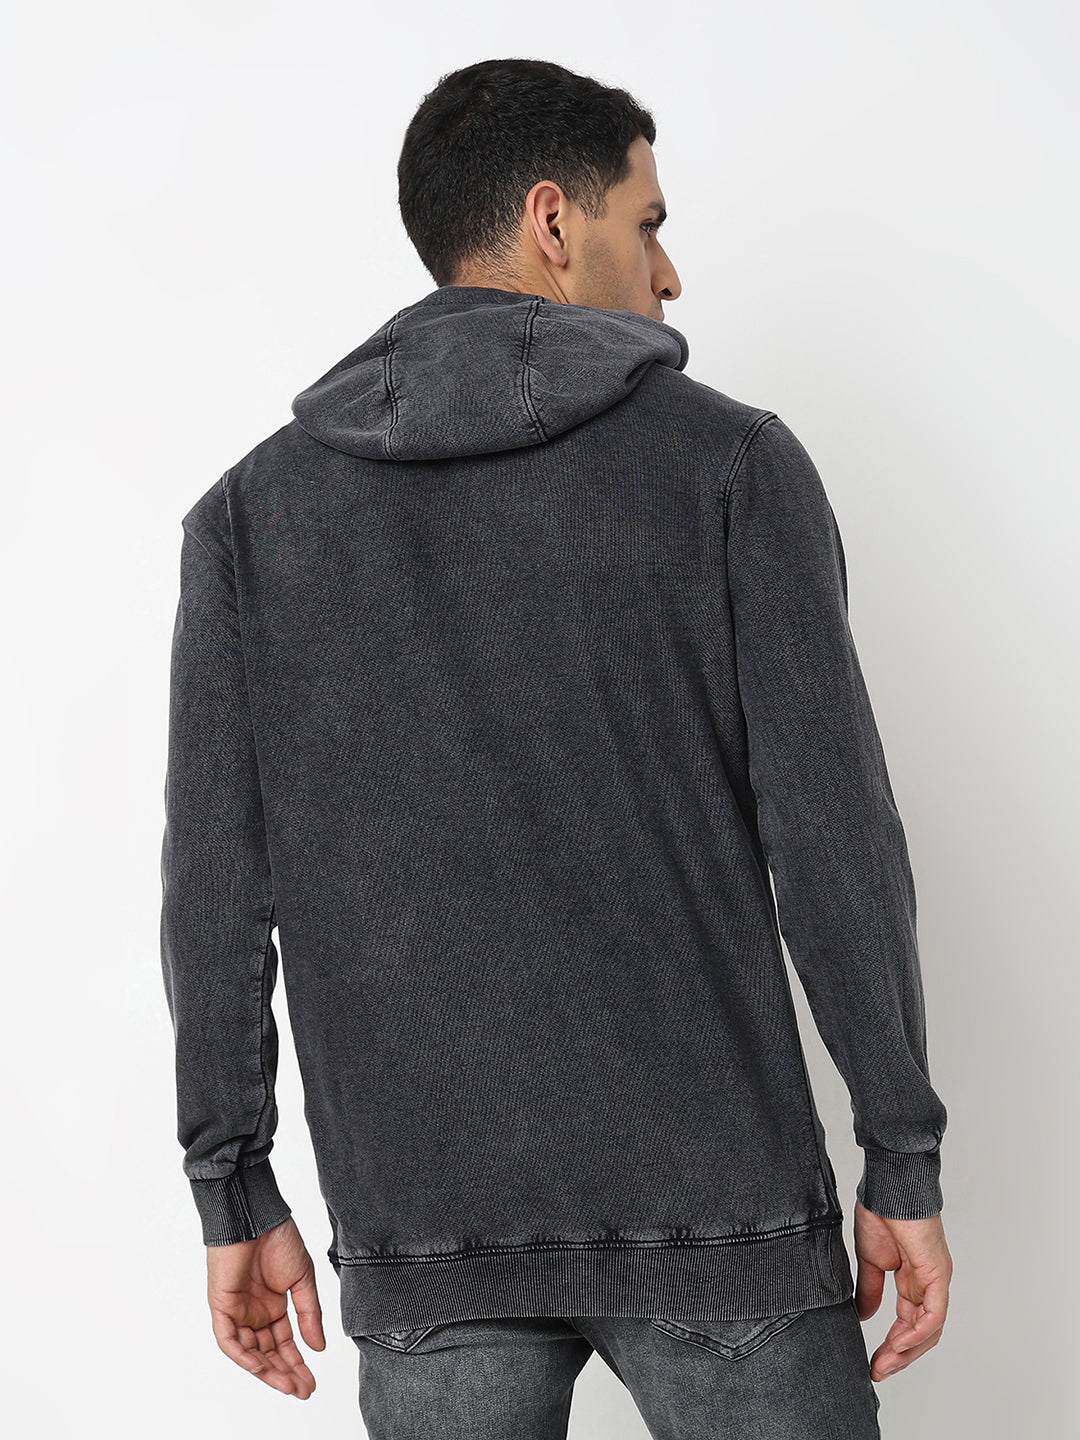 Spykar Round Neck Full Sleeves Black Sweatshirt For Men